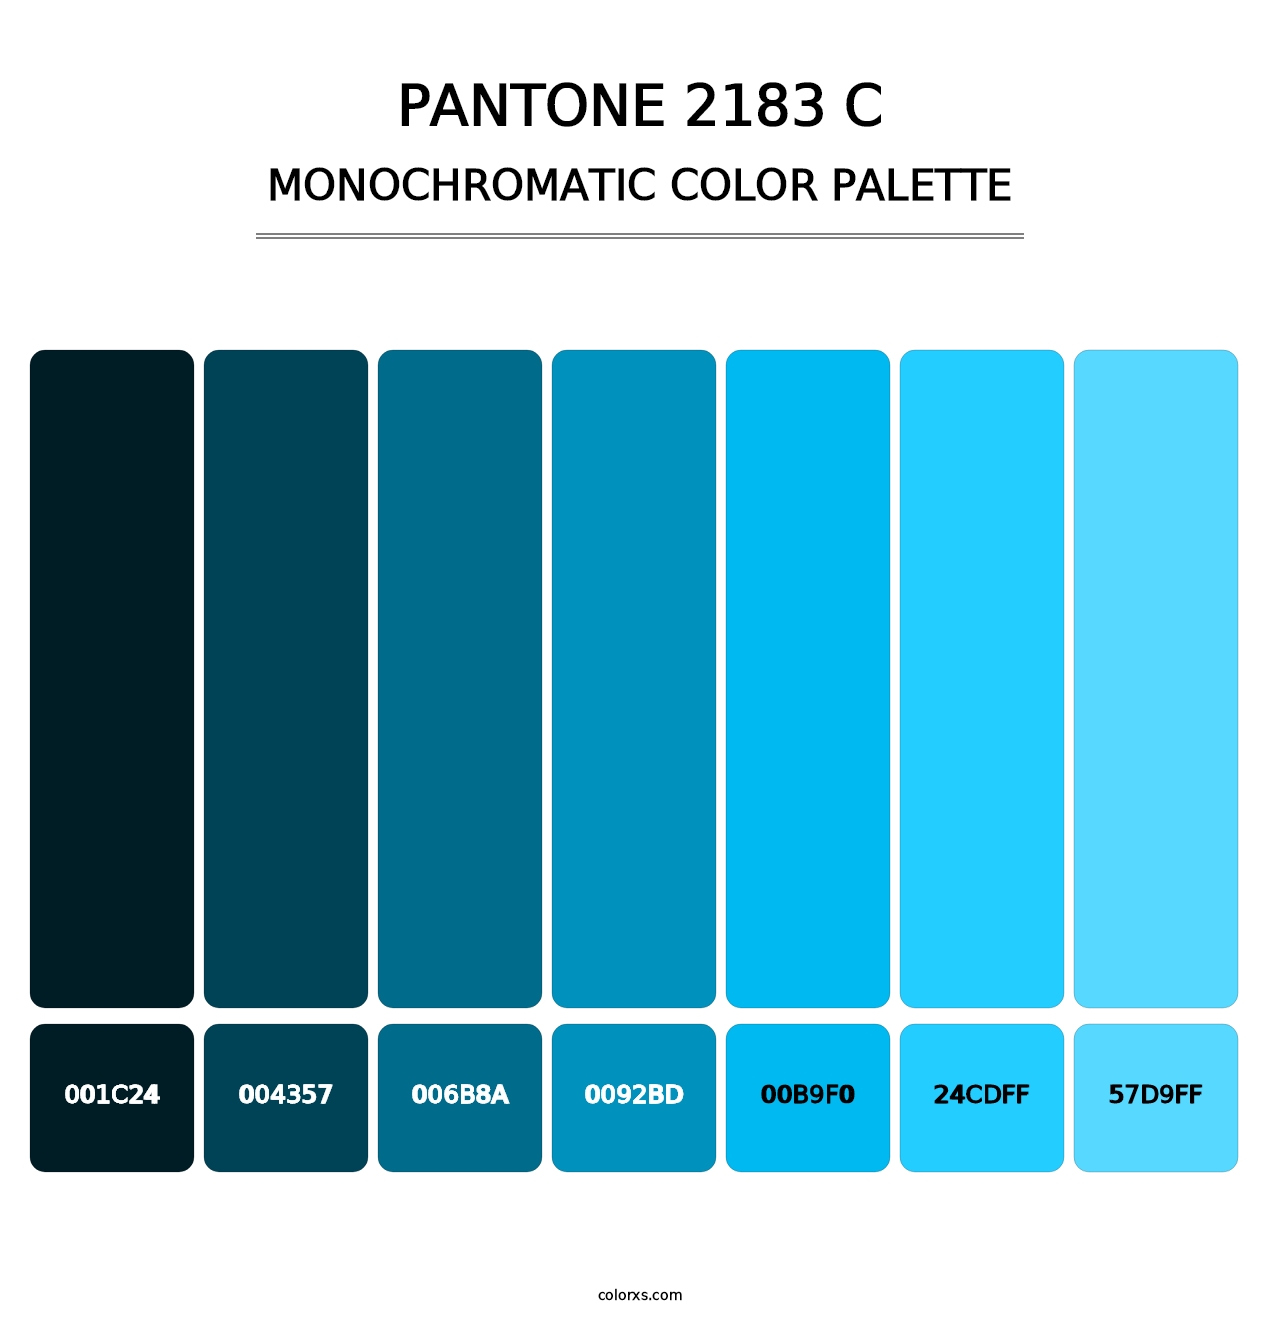 PANTONE 2183 C - Monochromatic Color Palette